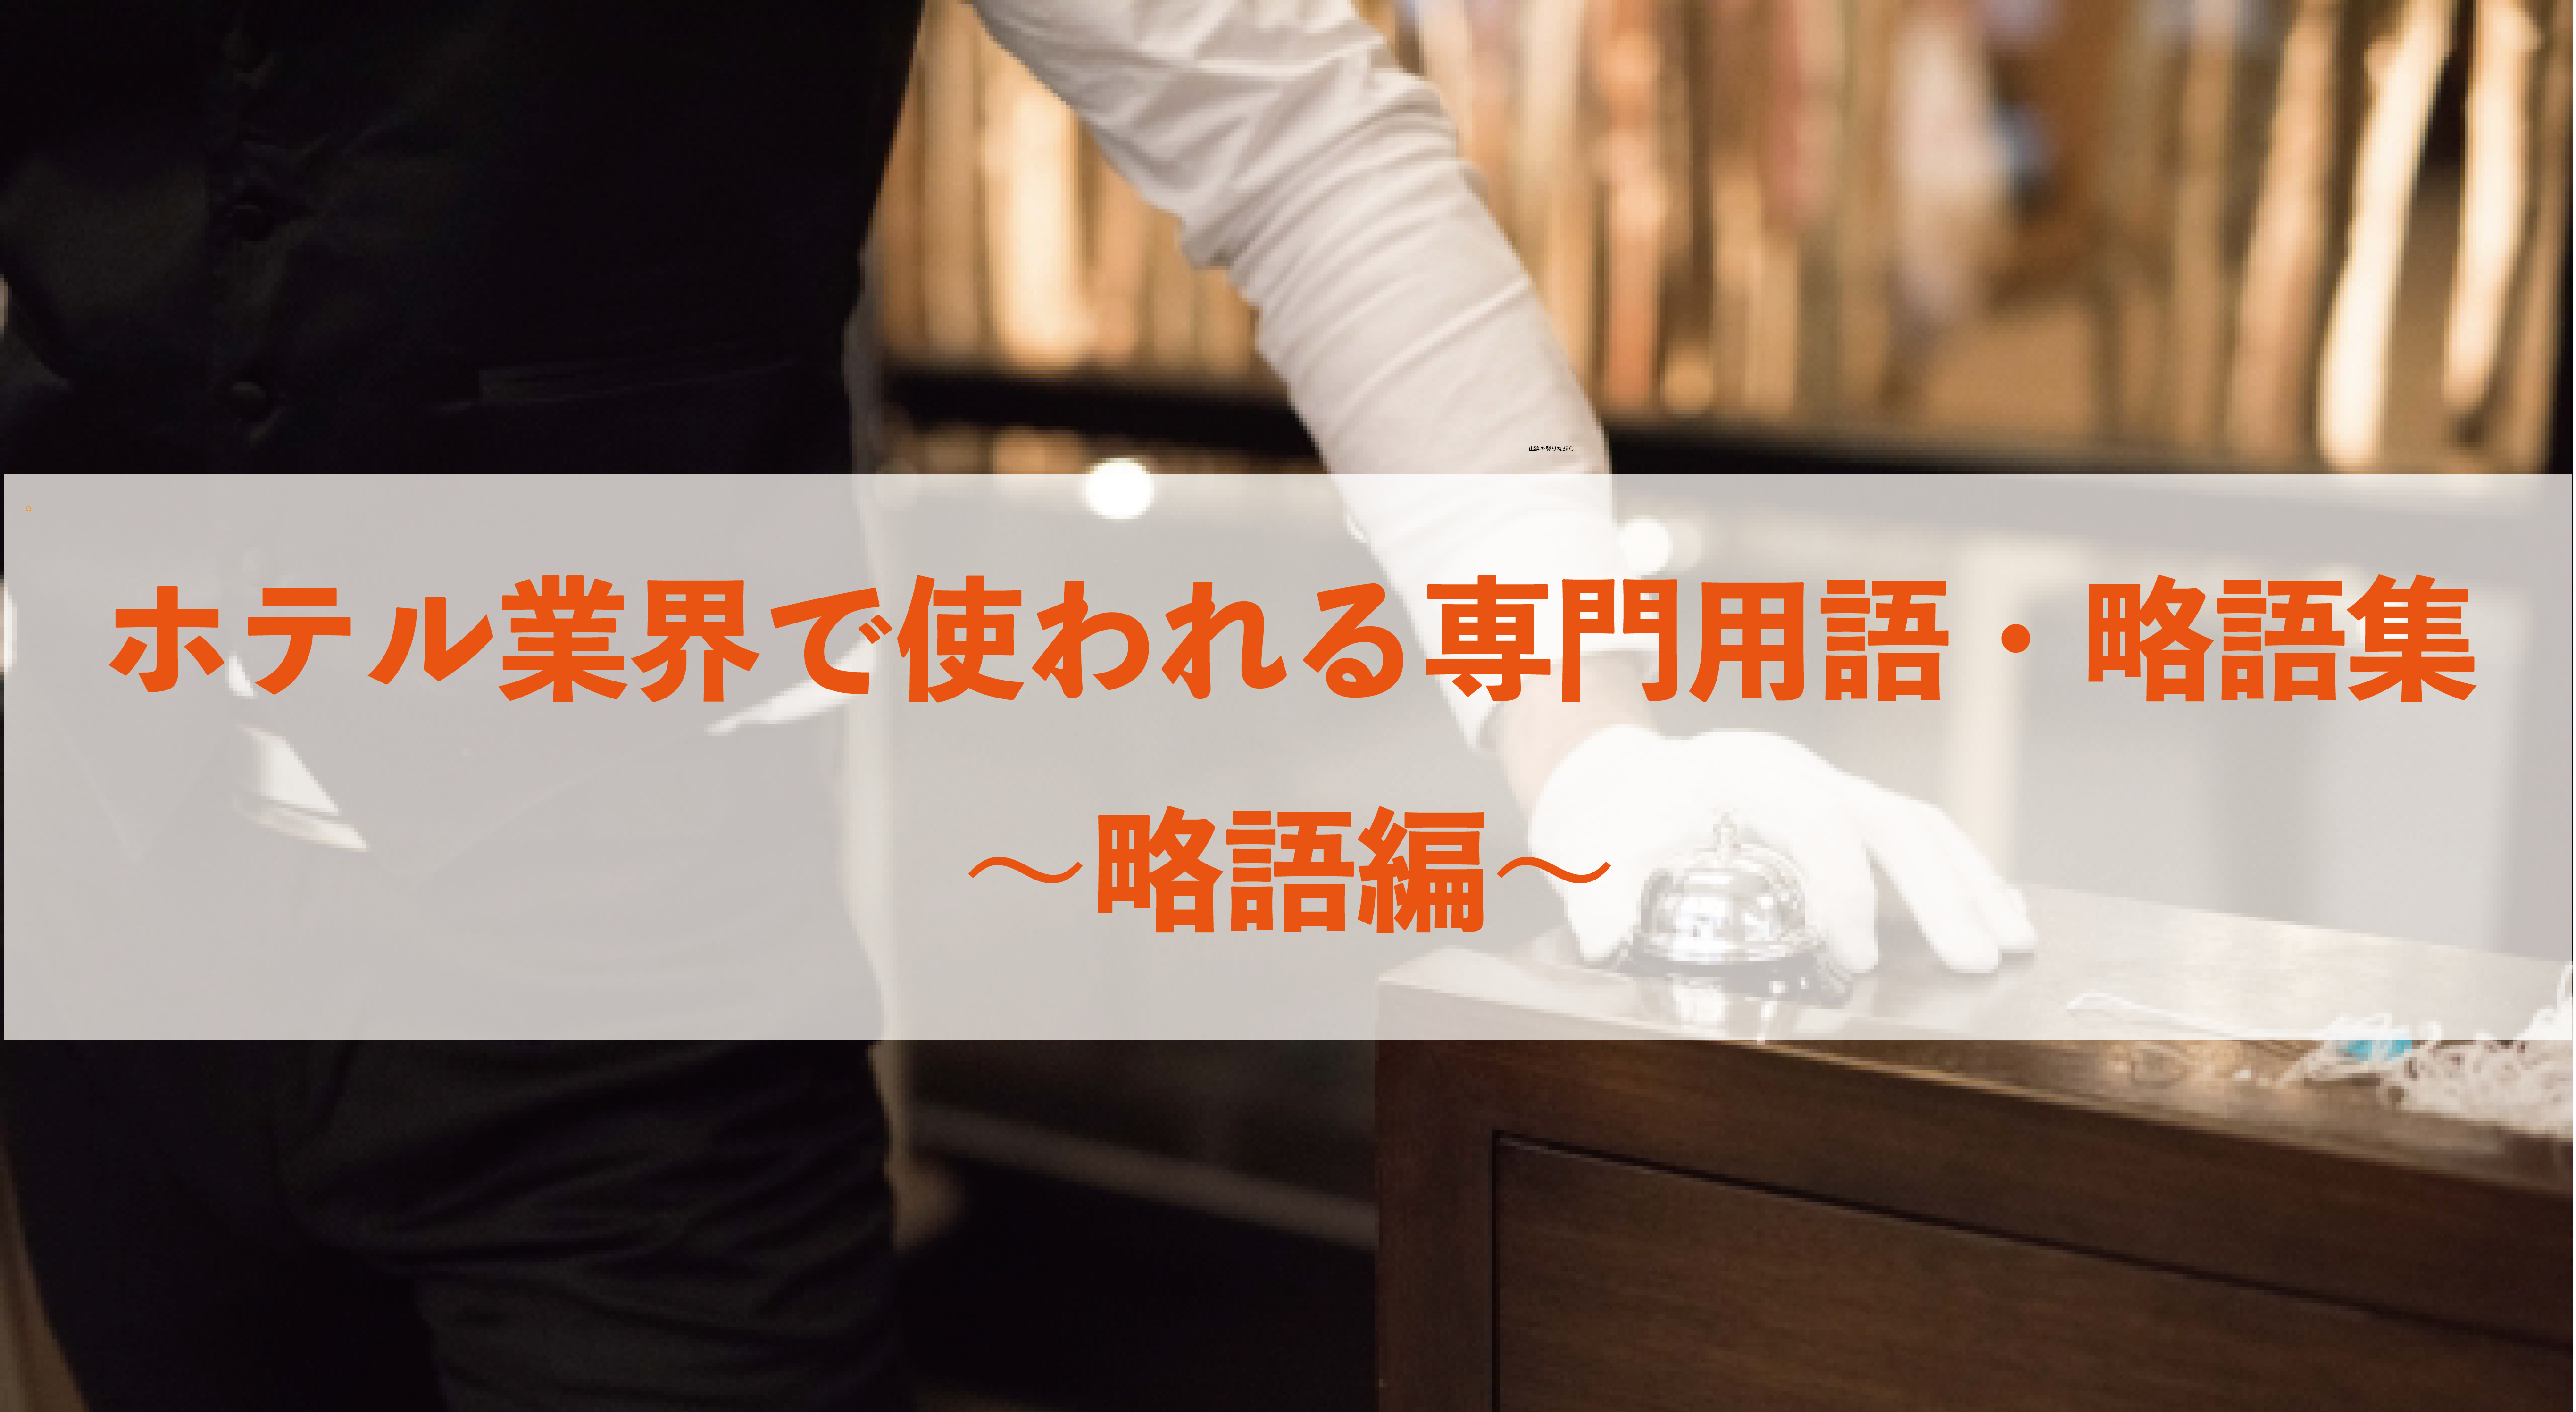 ホテル業界で使われる専門用語・略語集〜略語編〜